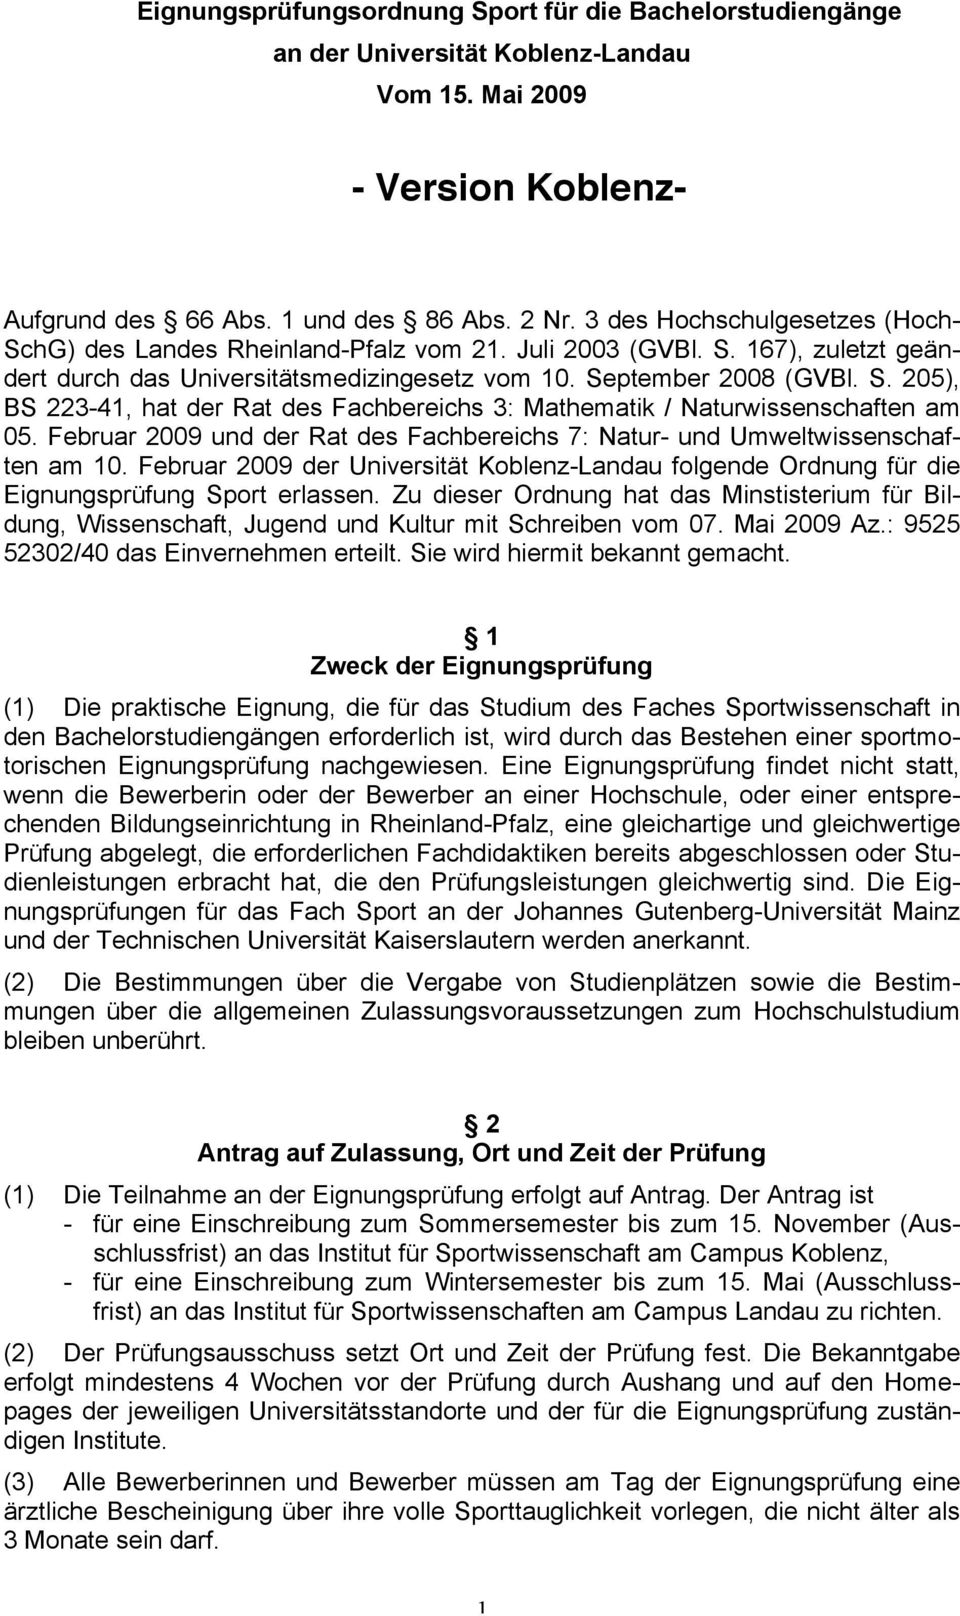 Februar 2009 und der Rat des Fachbereichs 7: Natur- und Umweltwissenschaften am 10. Februar 2009 der Universität Koblenz-Landau folgende Ordnung für die Eignungsprüfung Sport erlassen.